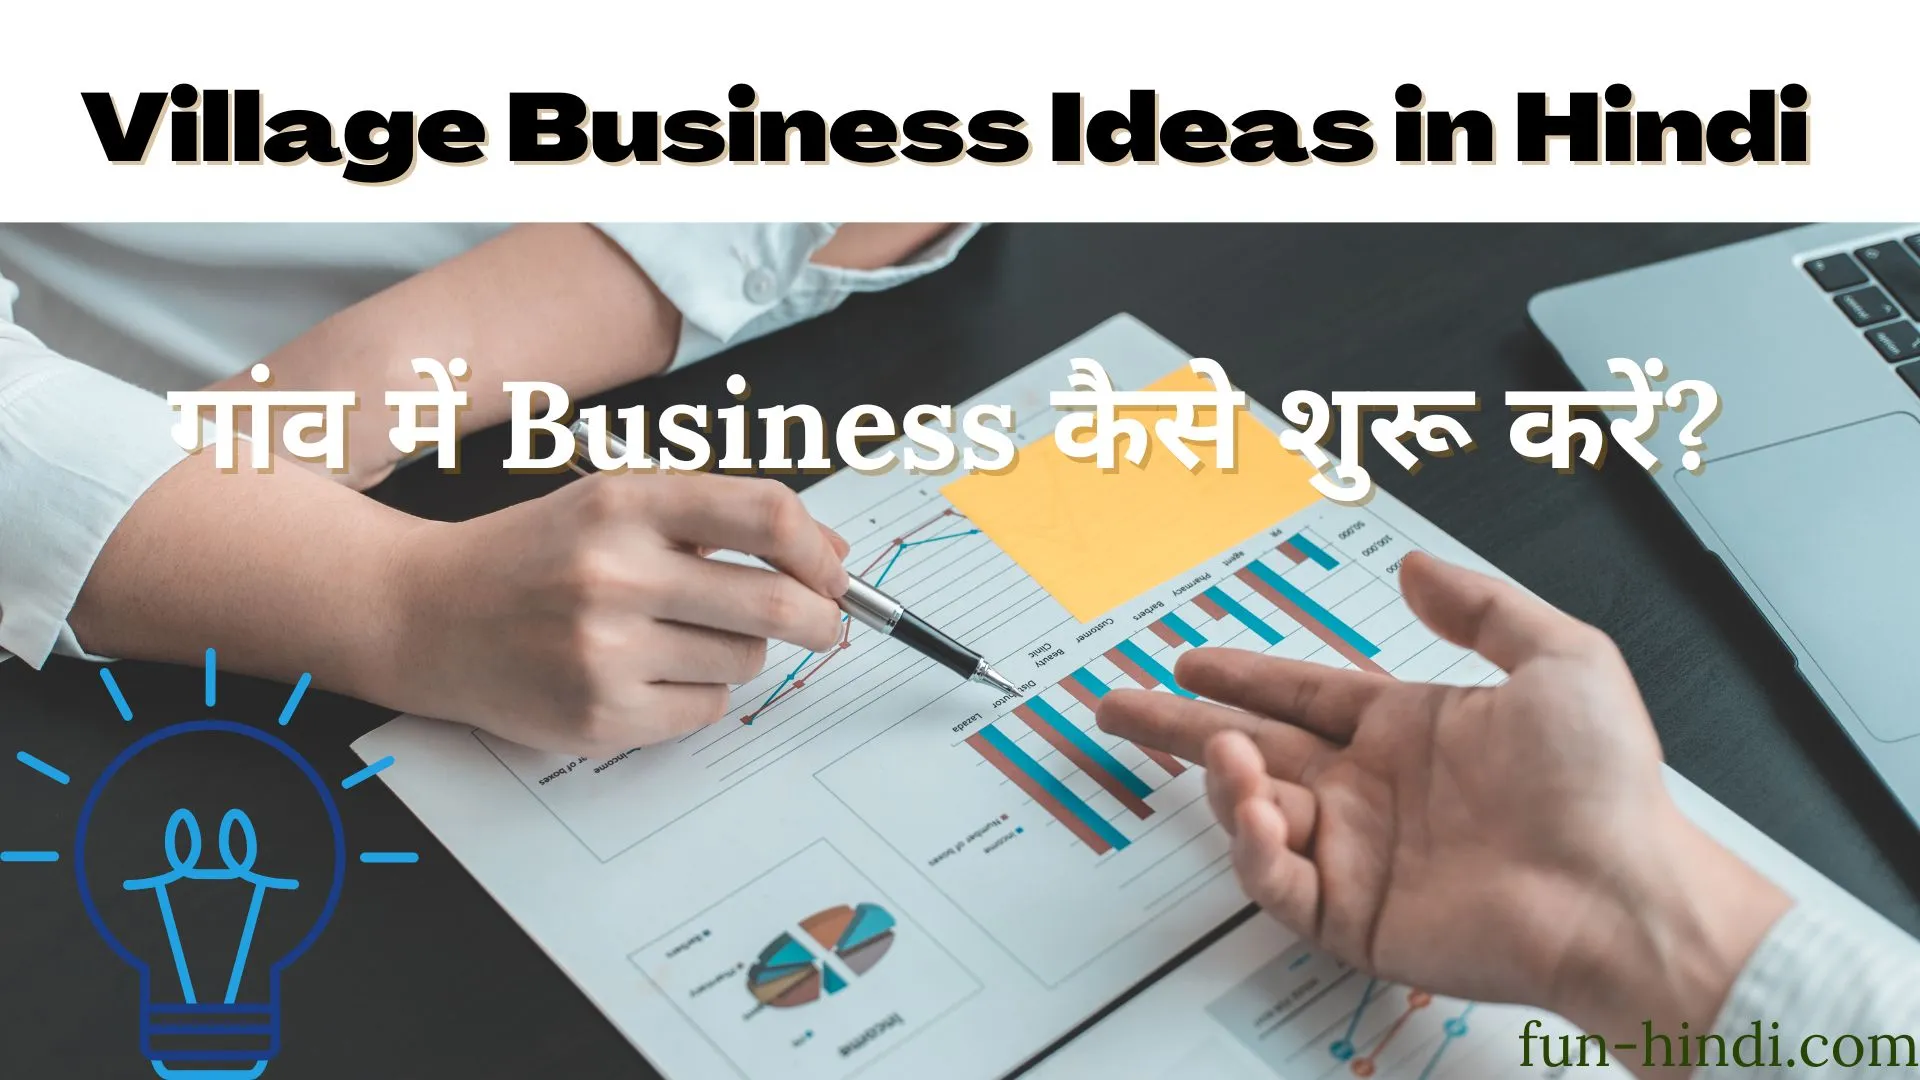 Village Business Ideas in Hindi : गांव में Business कैसे शुरू करें?